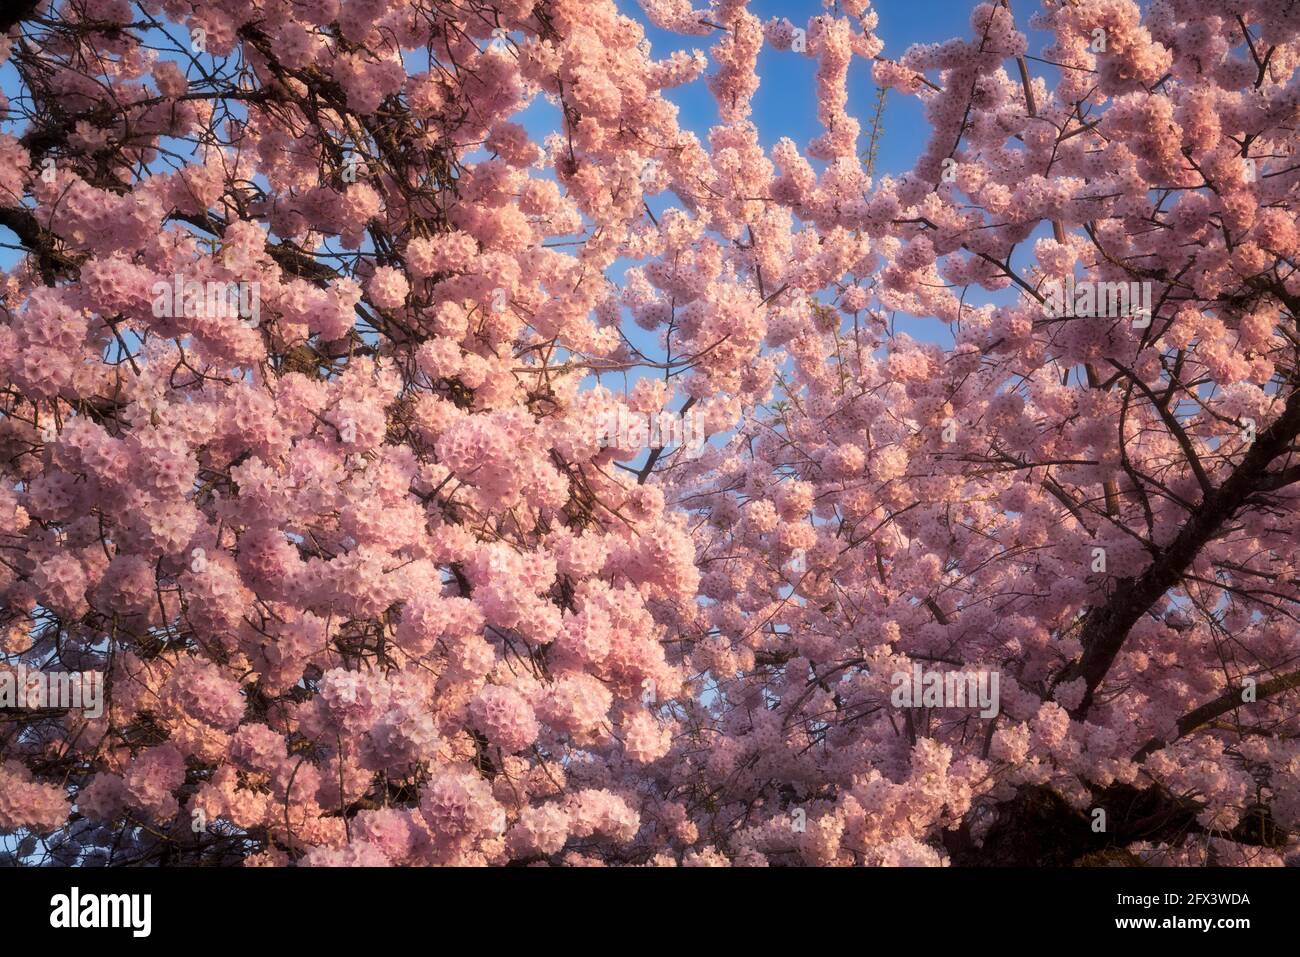 Diese frühlingshaft blühenden japanischen Kirschbäume, die in vielen Stadtvierteln im Multnomah County in Oregon zu finden sind, leuchten am Abend. Stockfoto